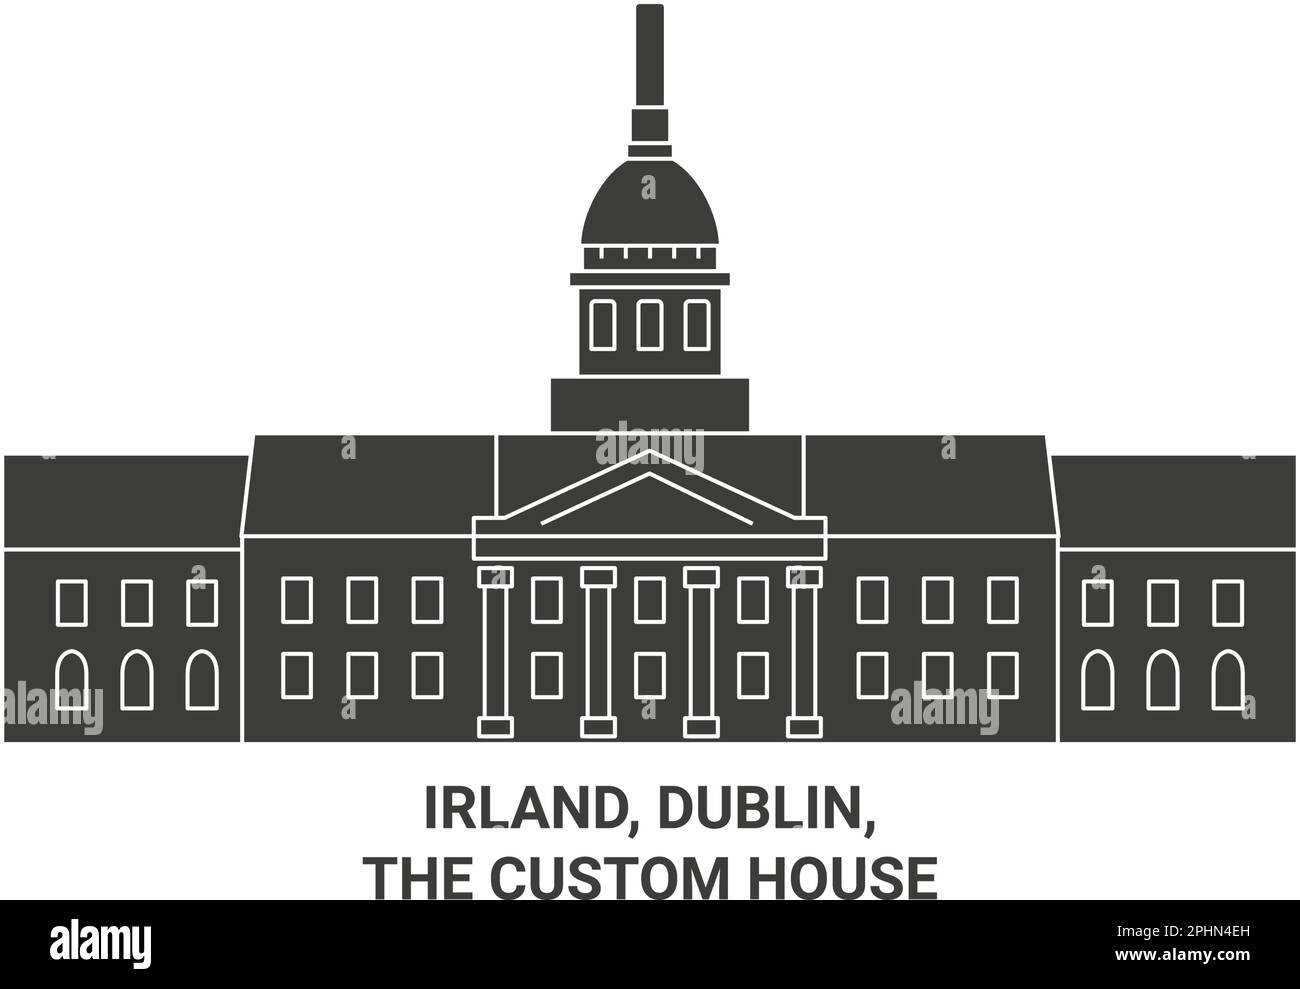 Irland, Dublin, The Custom House travel landmark vector illustration Stock Vector